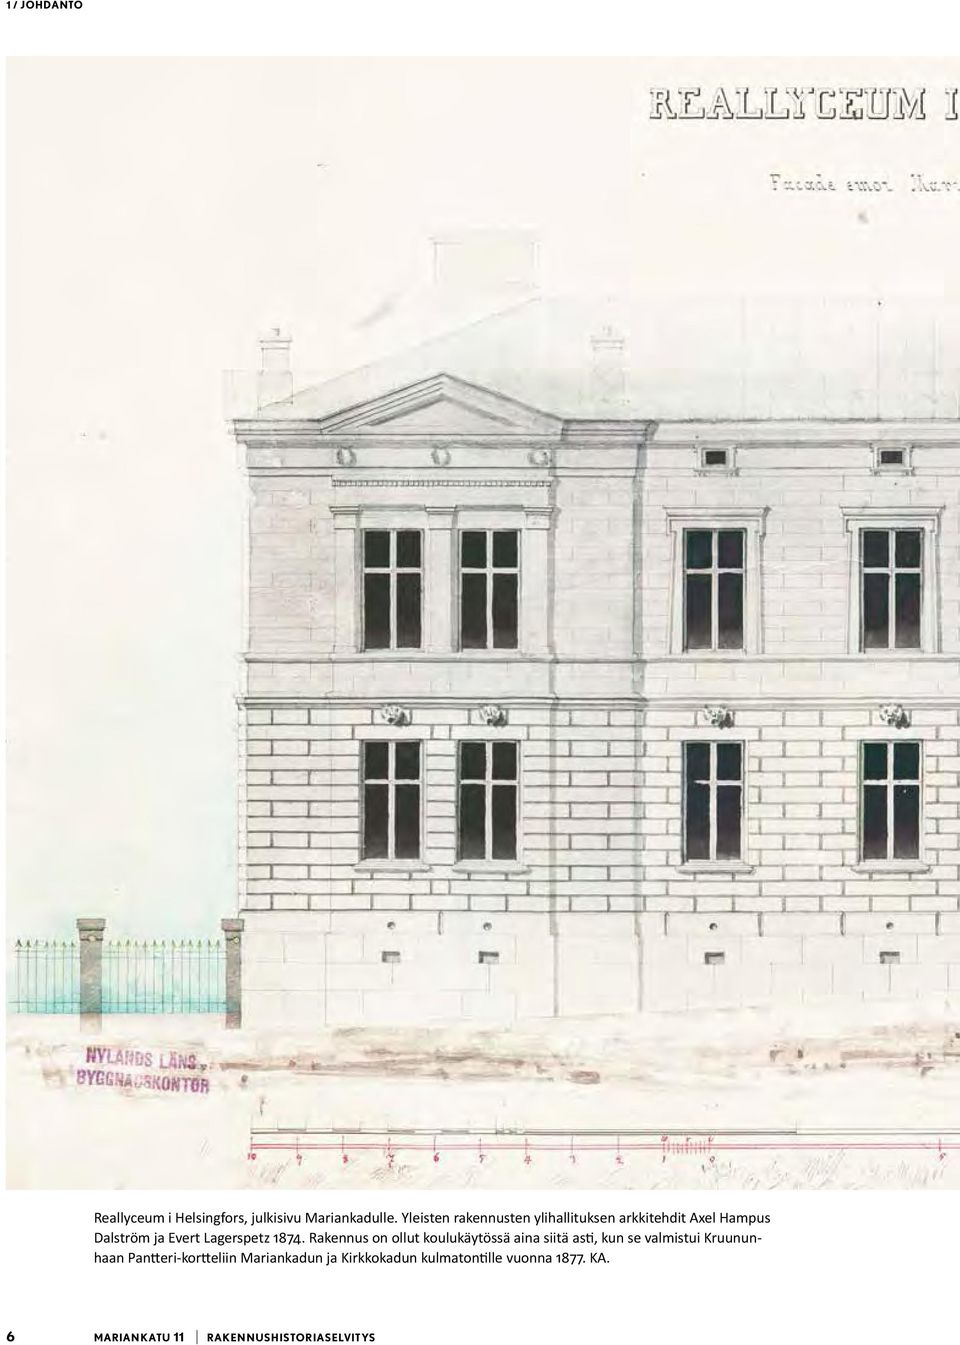 1874. Rakennus on ollut koulukäytössä aina siitä asti, kun se valmistui Kruununhaan